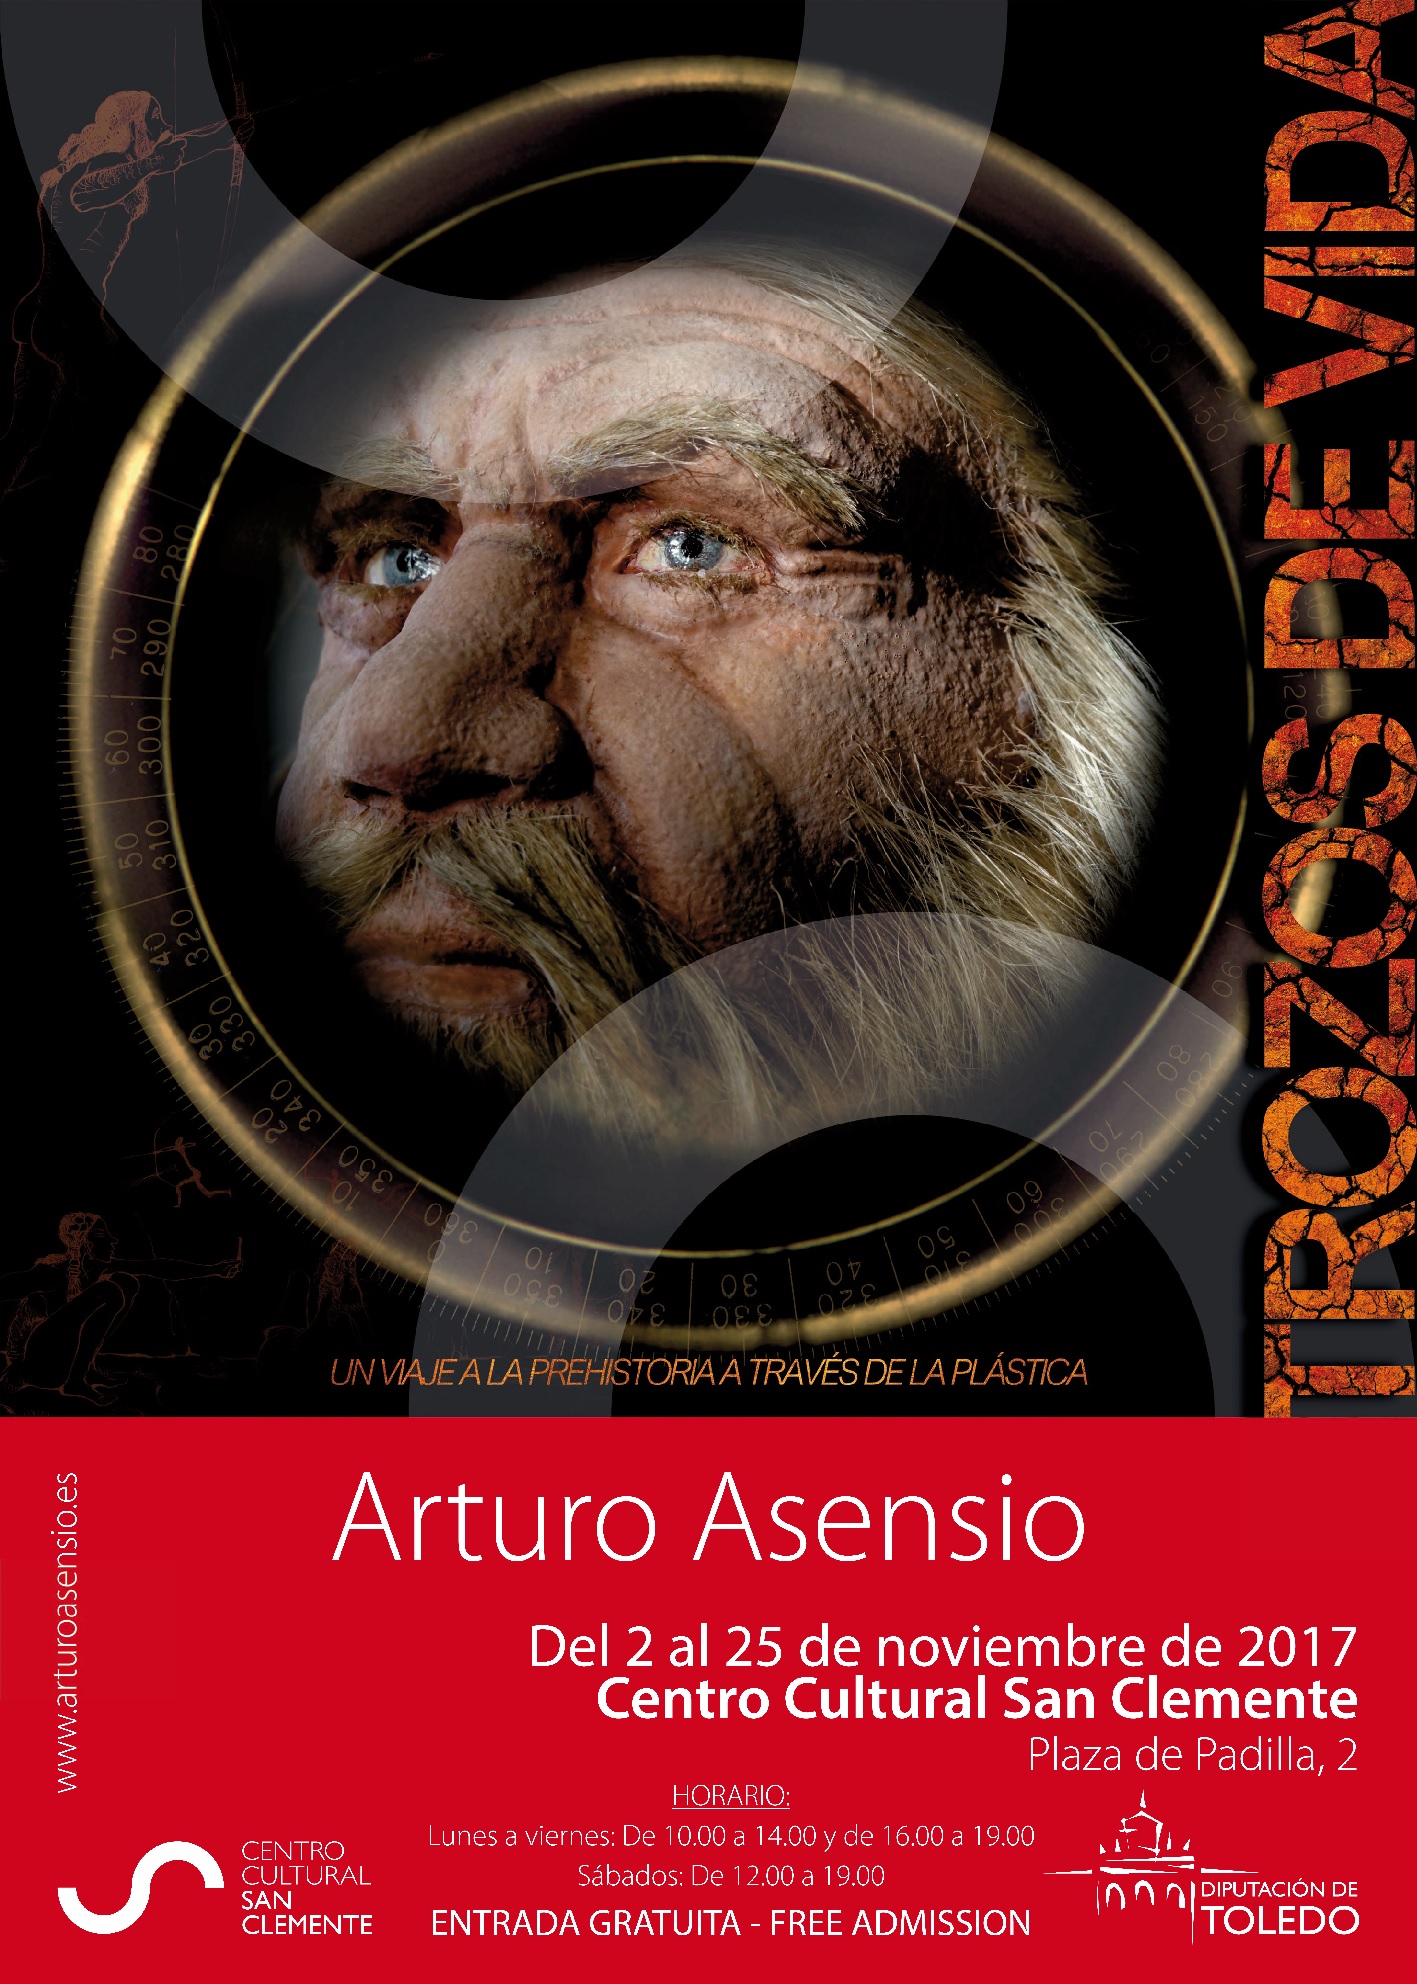 Arturo Asensio